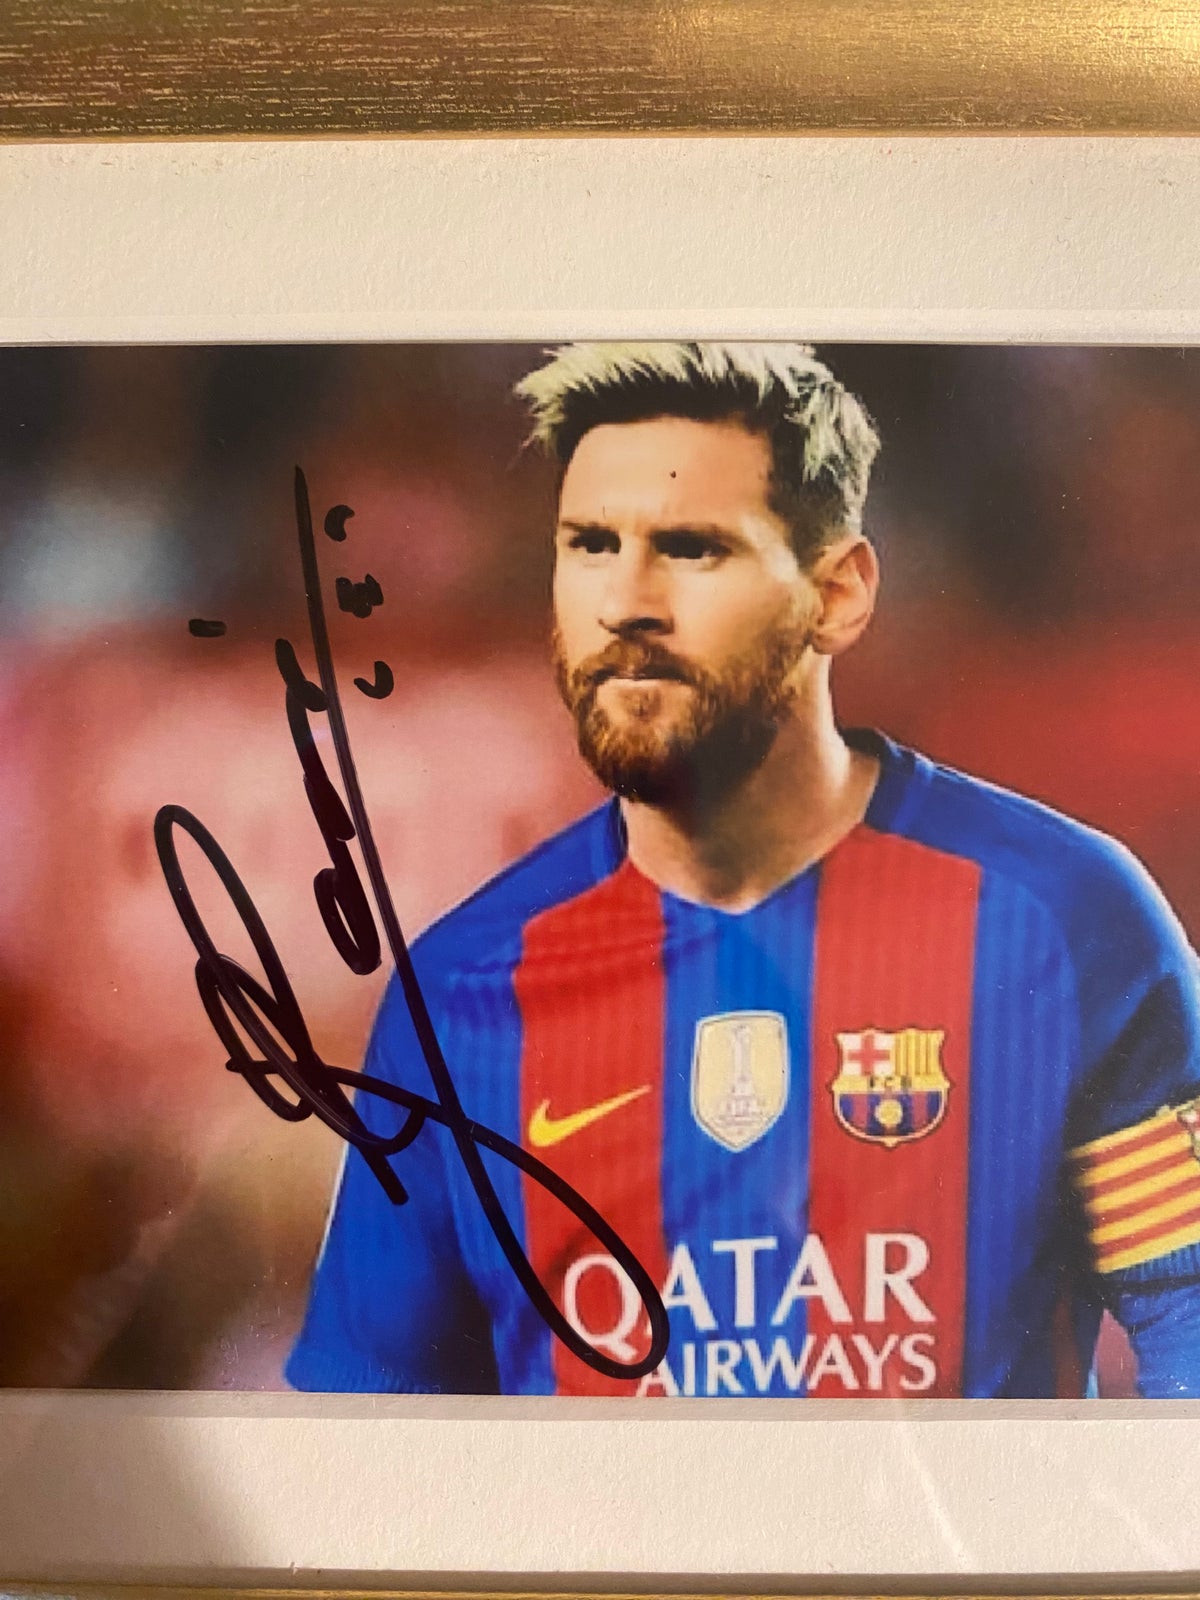 Fodboldtrøje, Fodbold autografer med Messi, Pelé og Henry